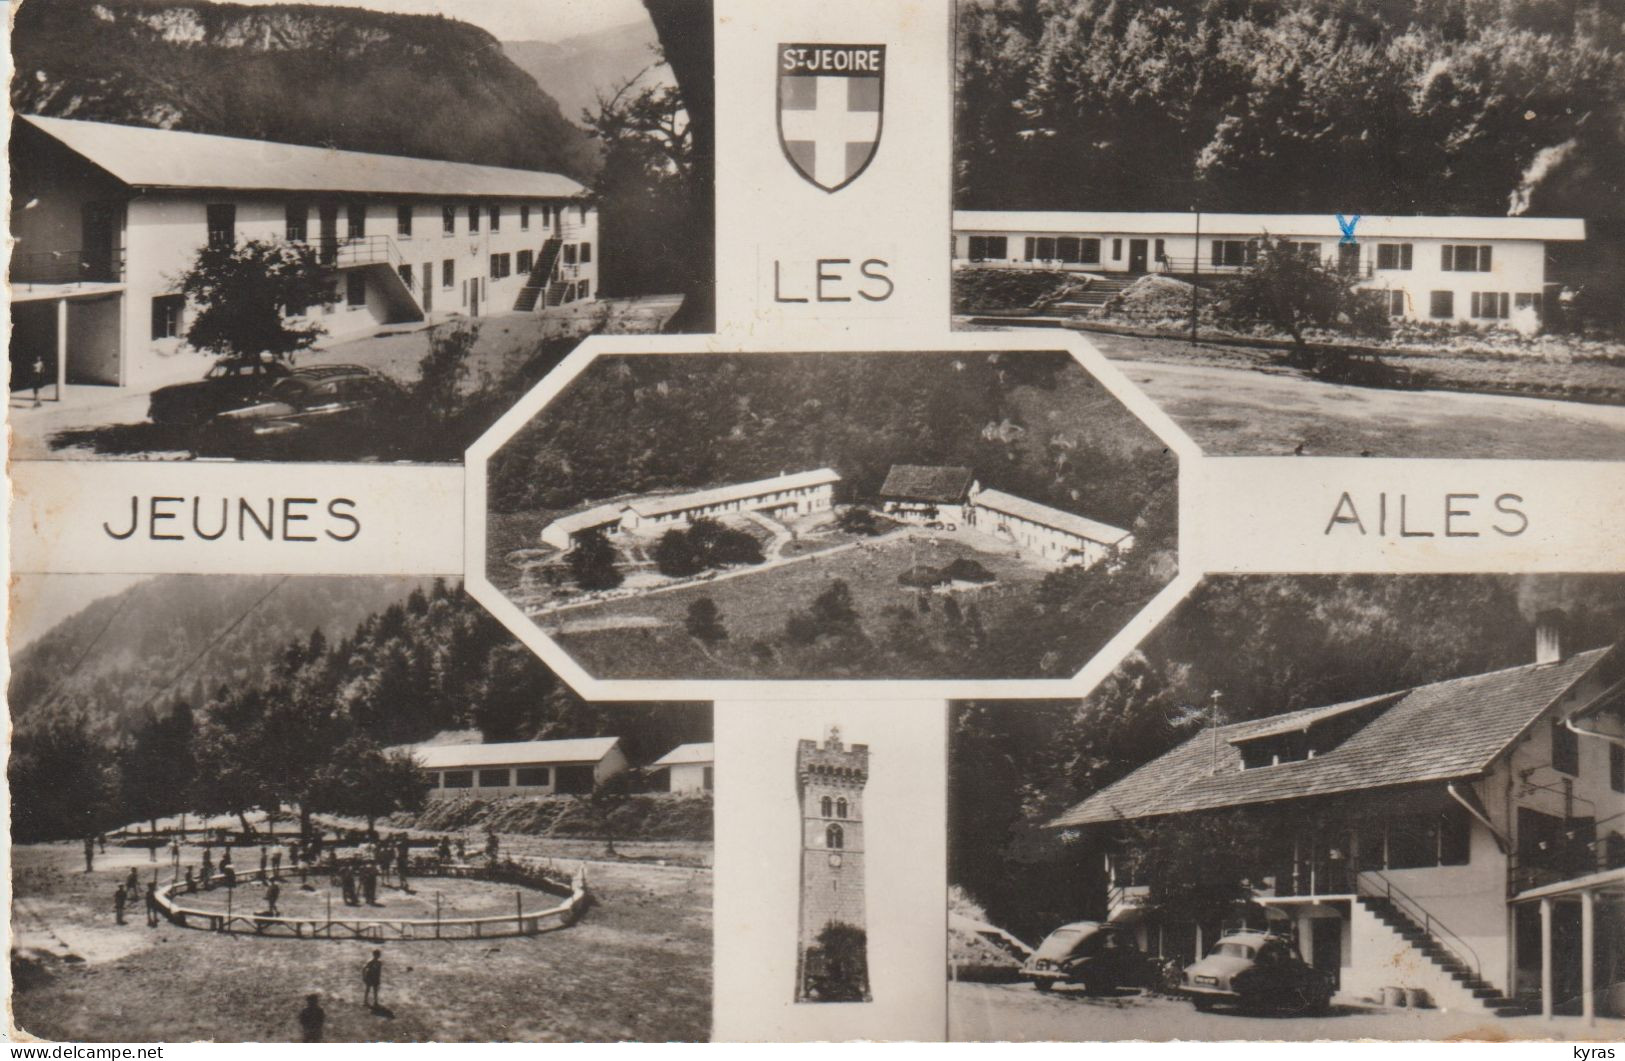 Cpsm 9x14. ST JEOIRE (74) Multi-vues LES JEUNES AILES. Colonie De Vacances "Les Jeunes Ailes" - Saint-Jeoire